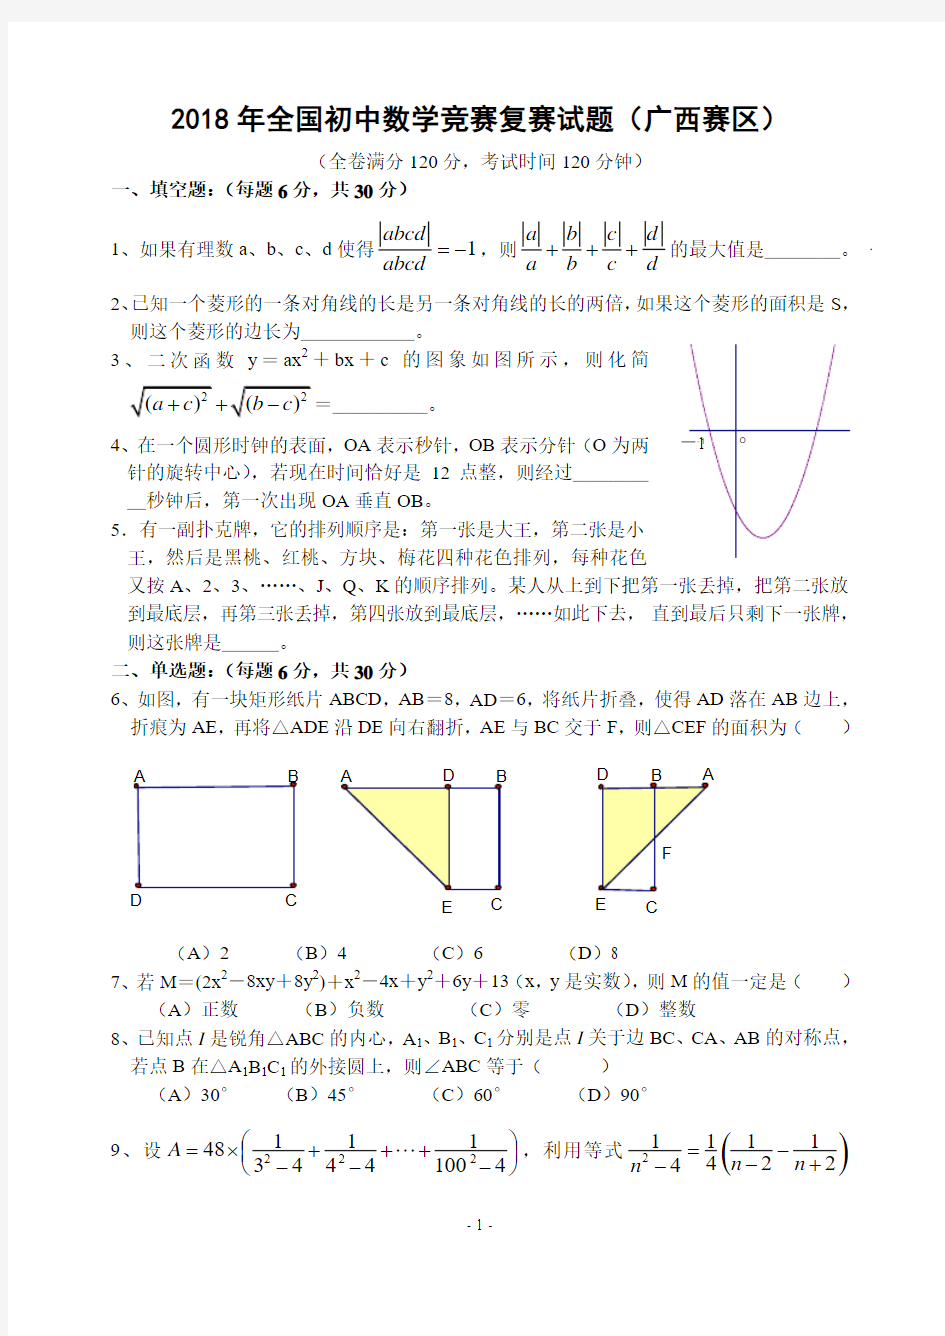 2018年全国初中数学竞赛复赛试题(广西赛区)